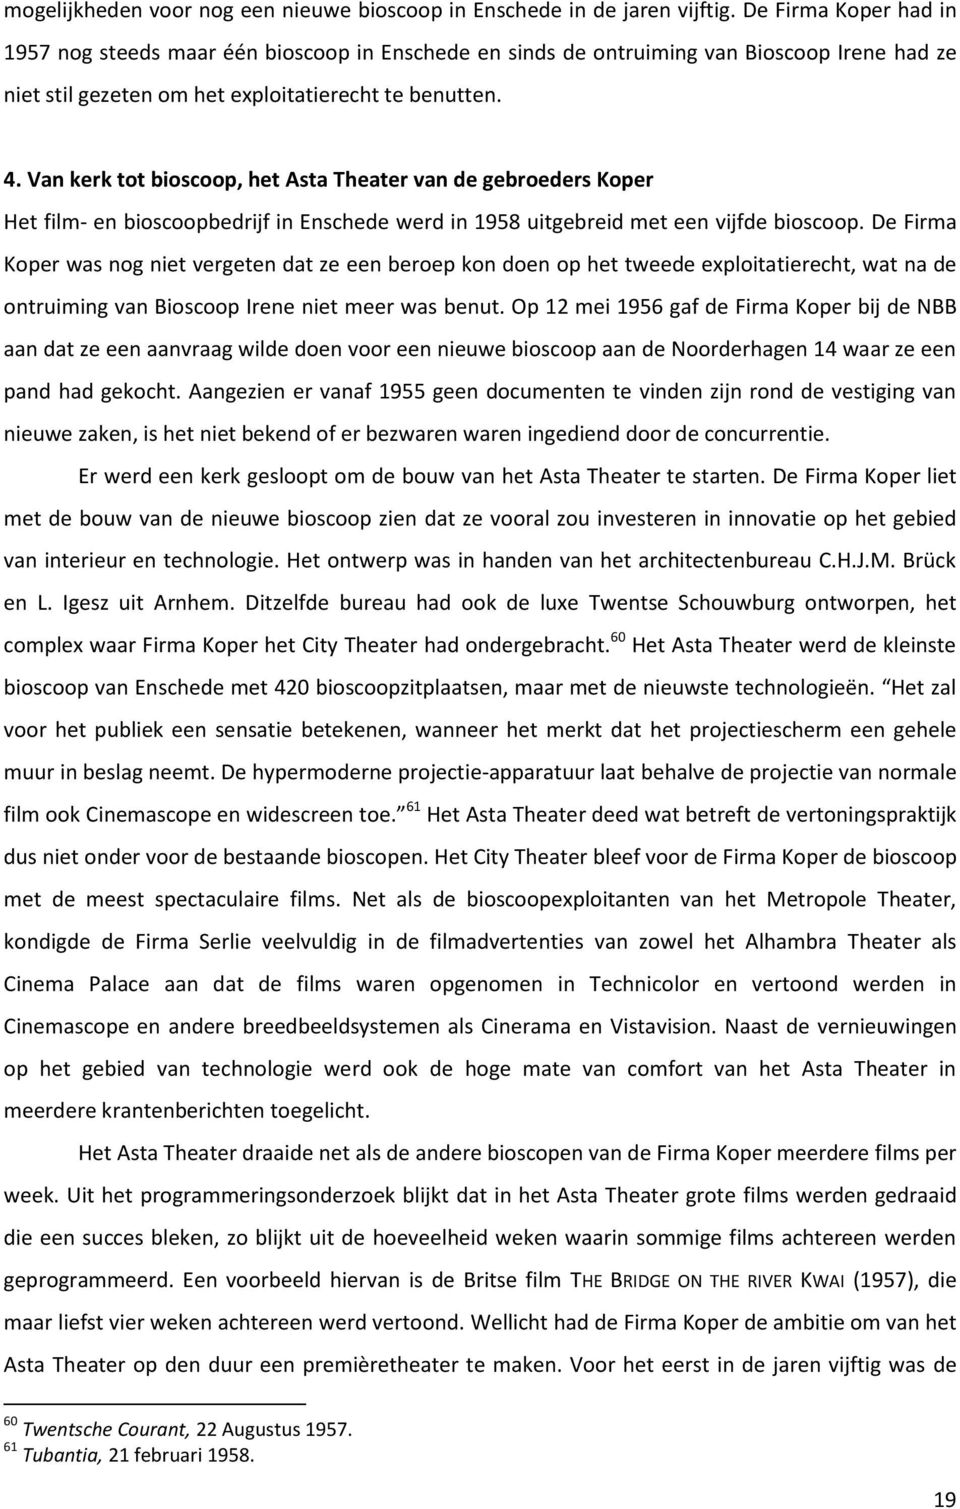 Van kerk tot bioscoop, het Asta Theater van de gebroeders Koper Het film- en bioscoopbedrijf in Enschede werd in 58 uitgebreid met een vijfde bioscoop.